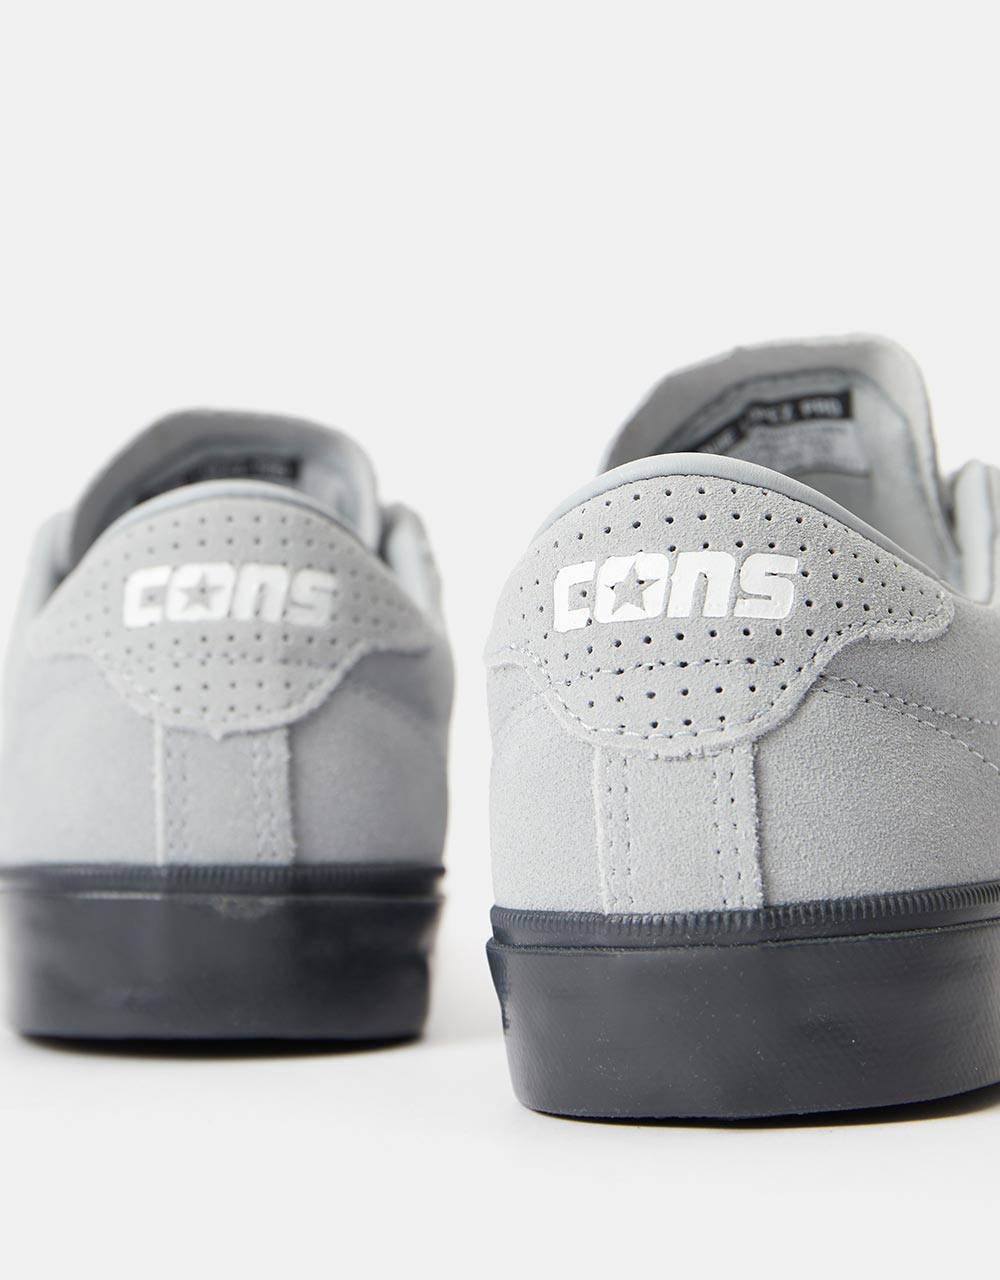 Converse Cons Louie Lopez Pro Skate Shoes - Ash Stone/White/Dk Smoke Grey